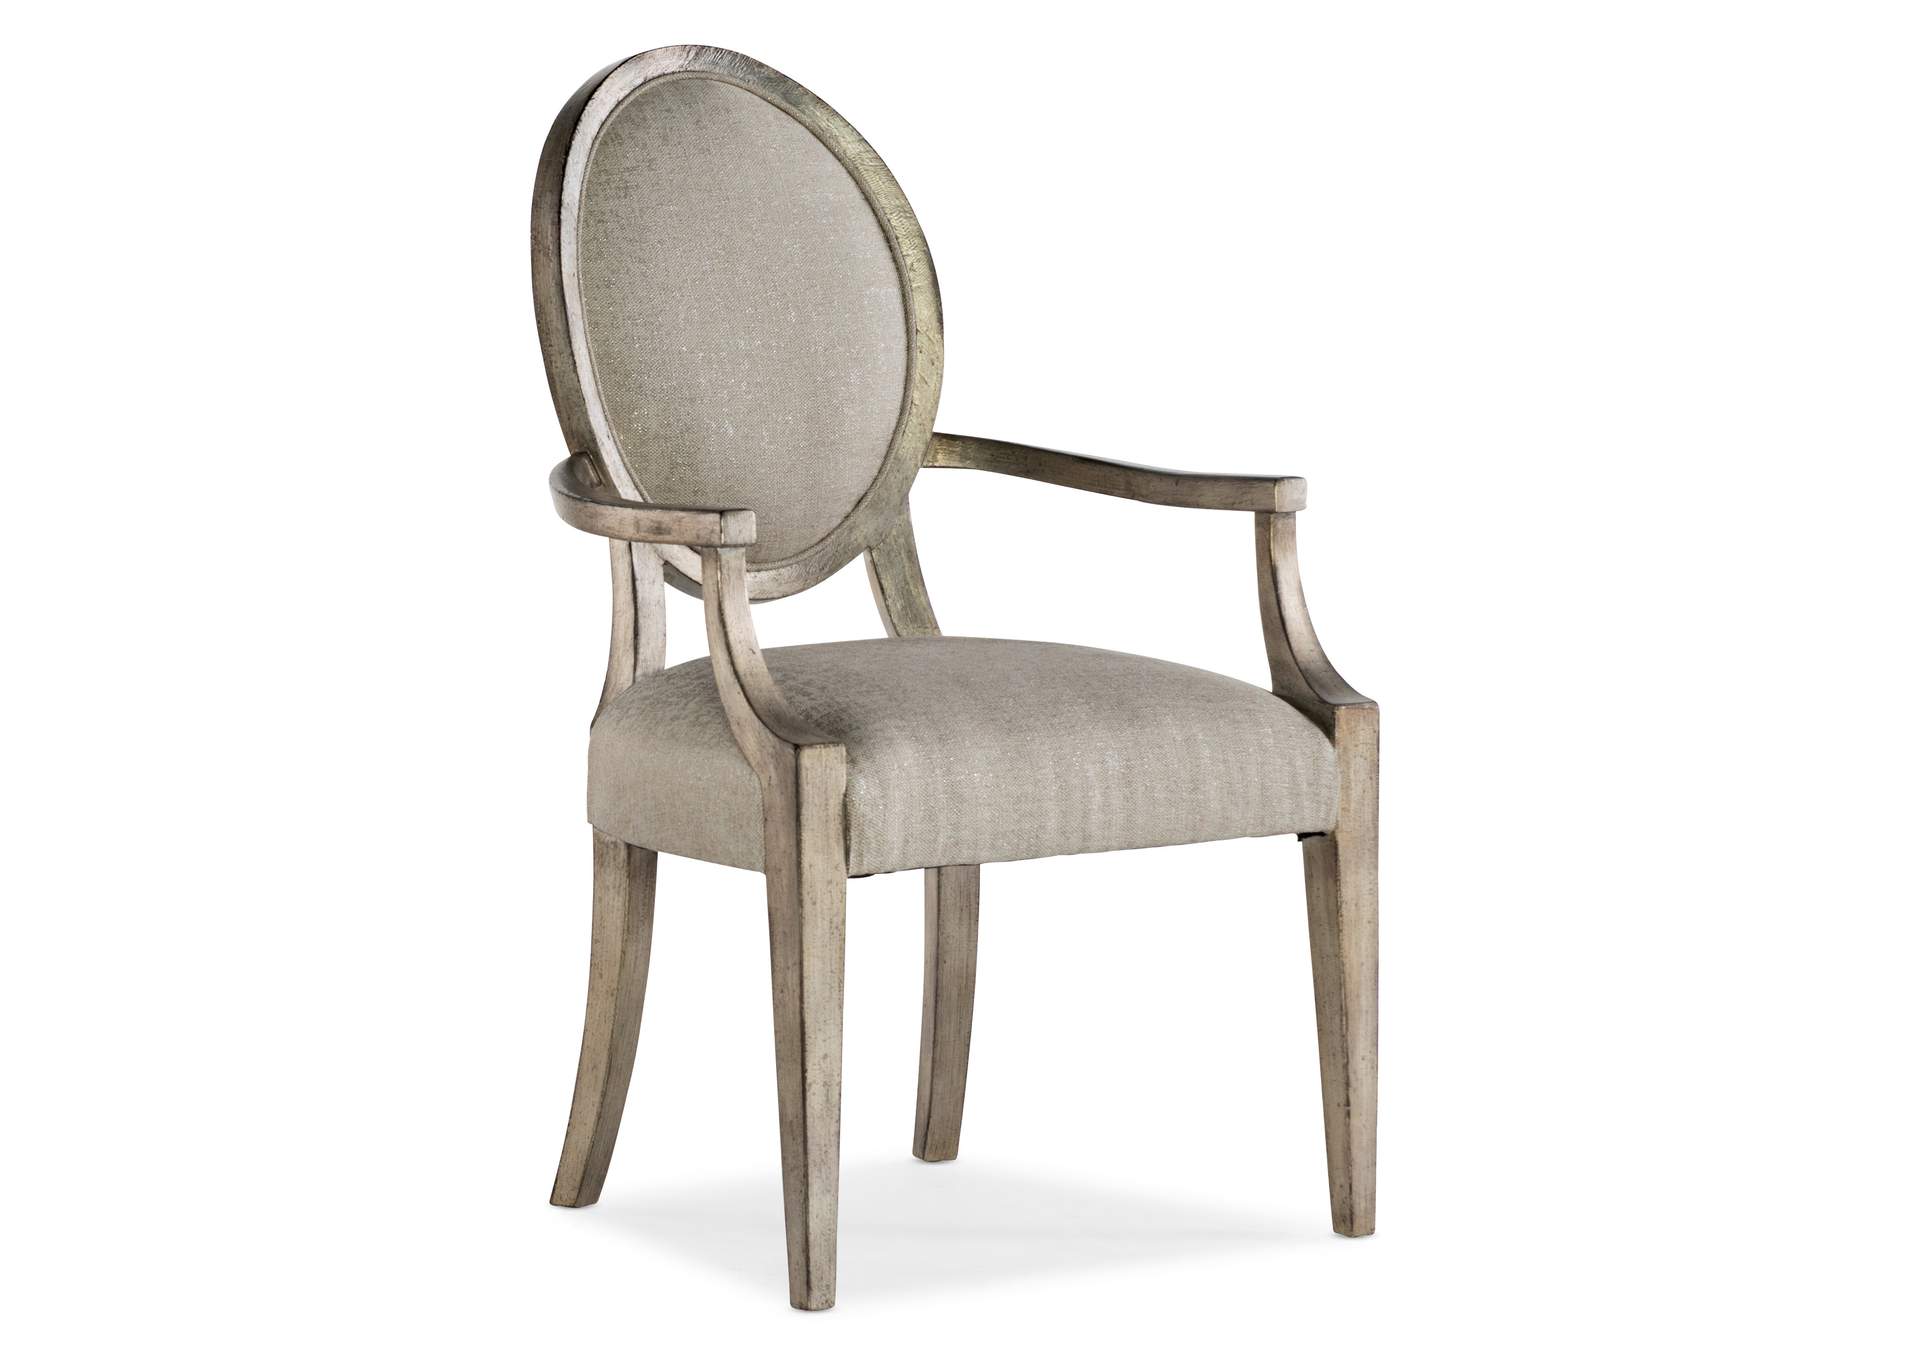 Sanctuary Romantique Oval Arm Chair - 2 per carton/price ea